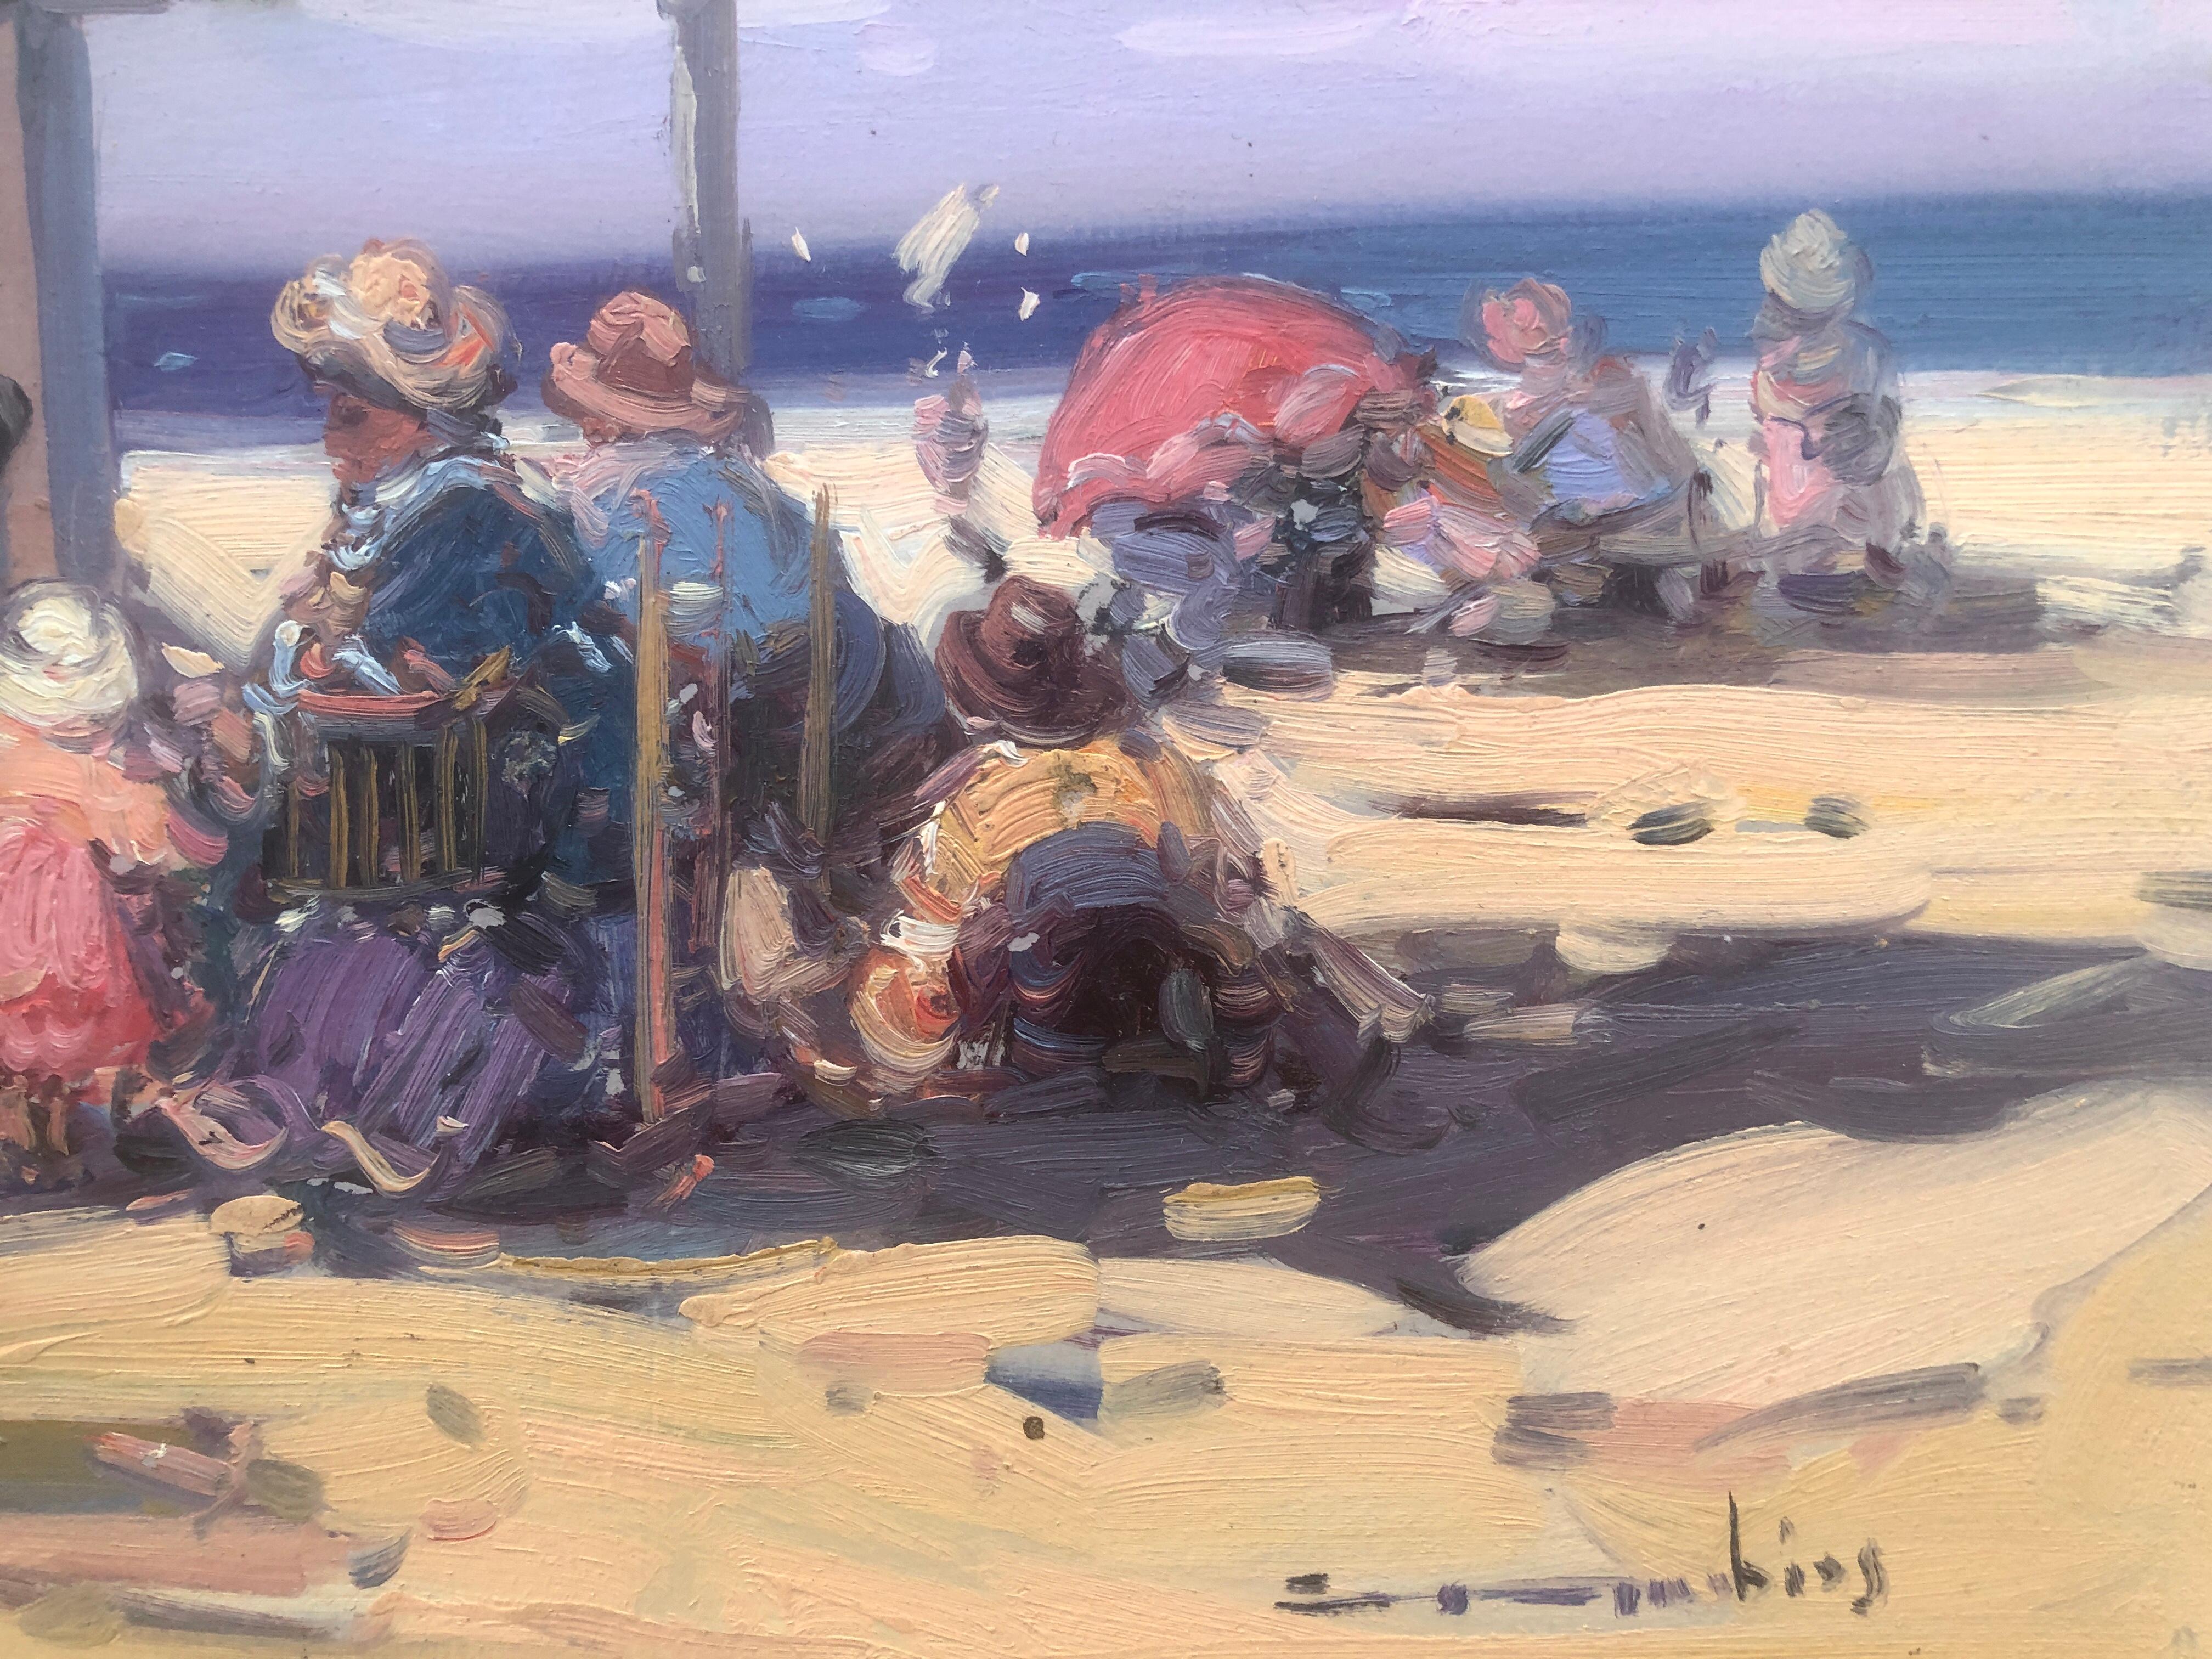 Espagnols sur la plage Espagne huile sur carton peinture - Post-impressionnisme Painting par Gabriel Casarrubios